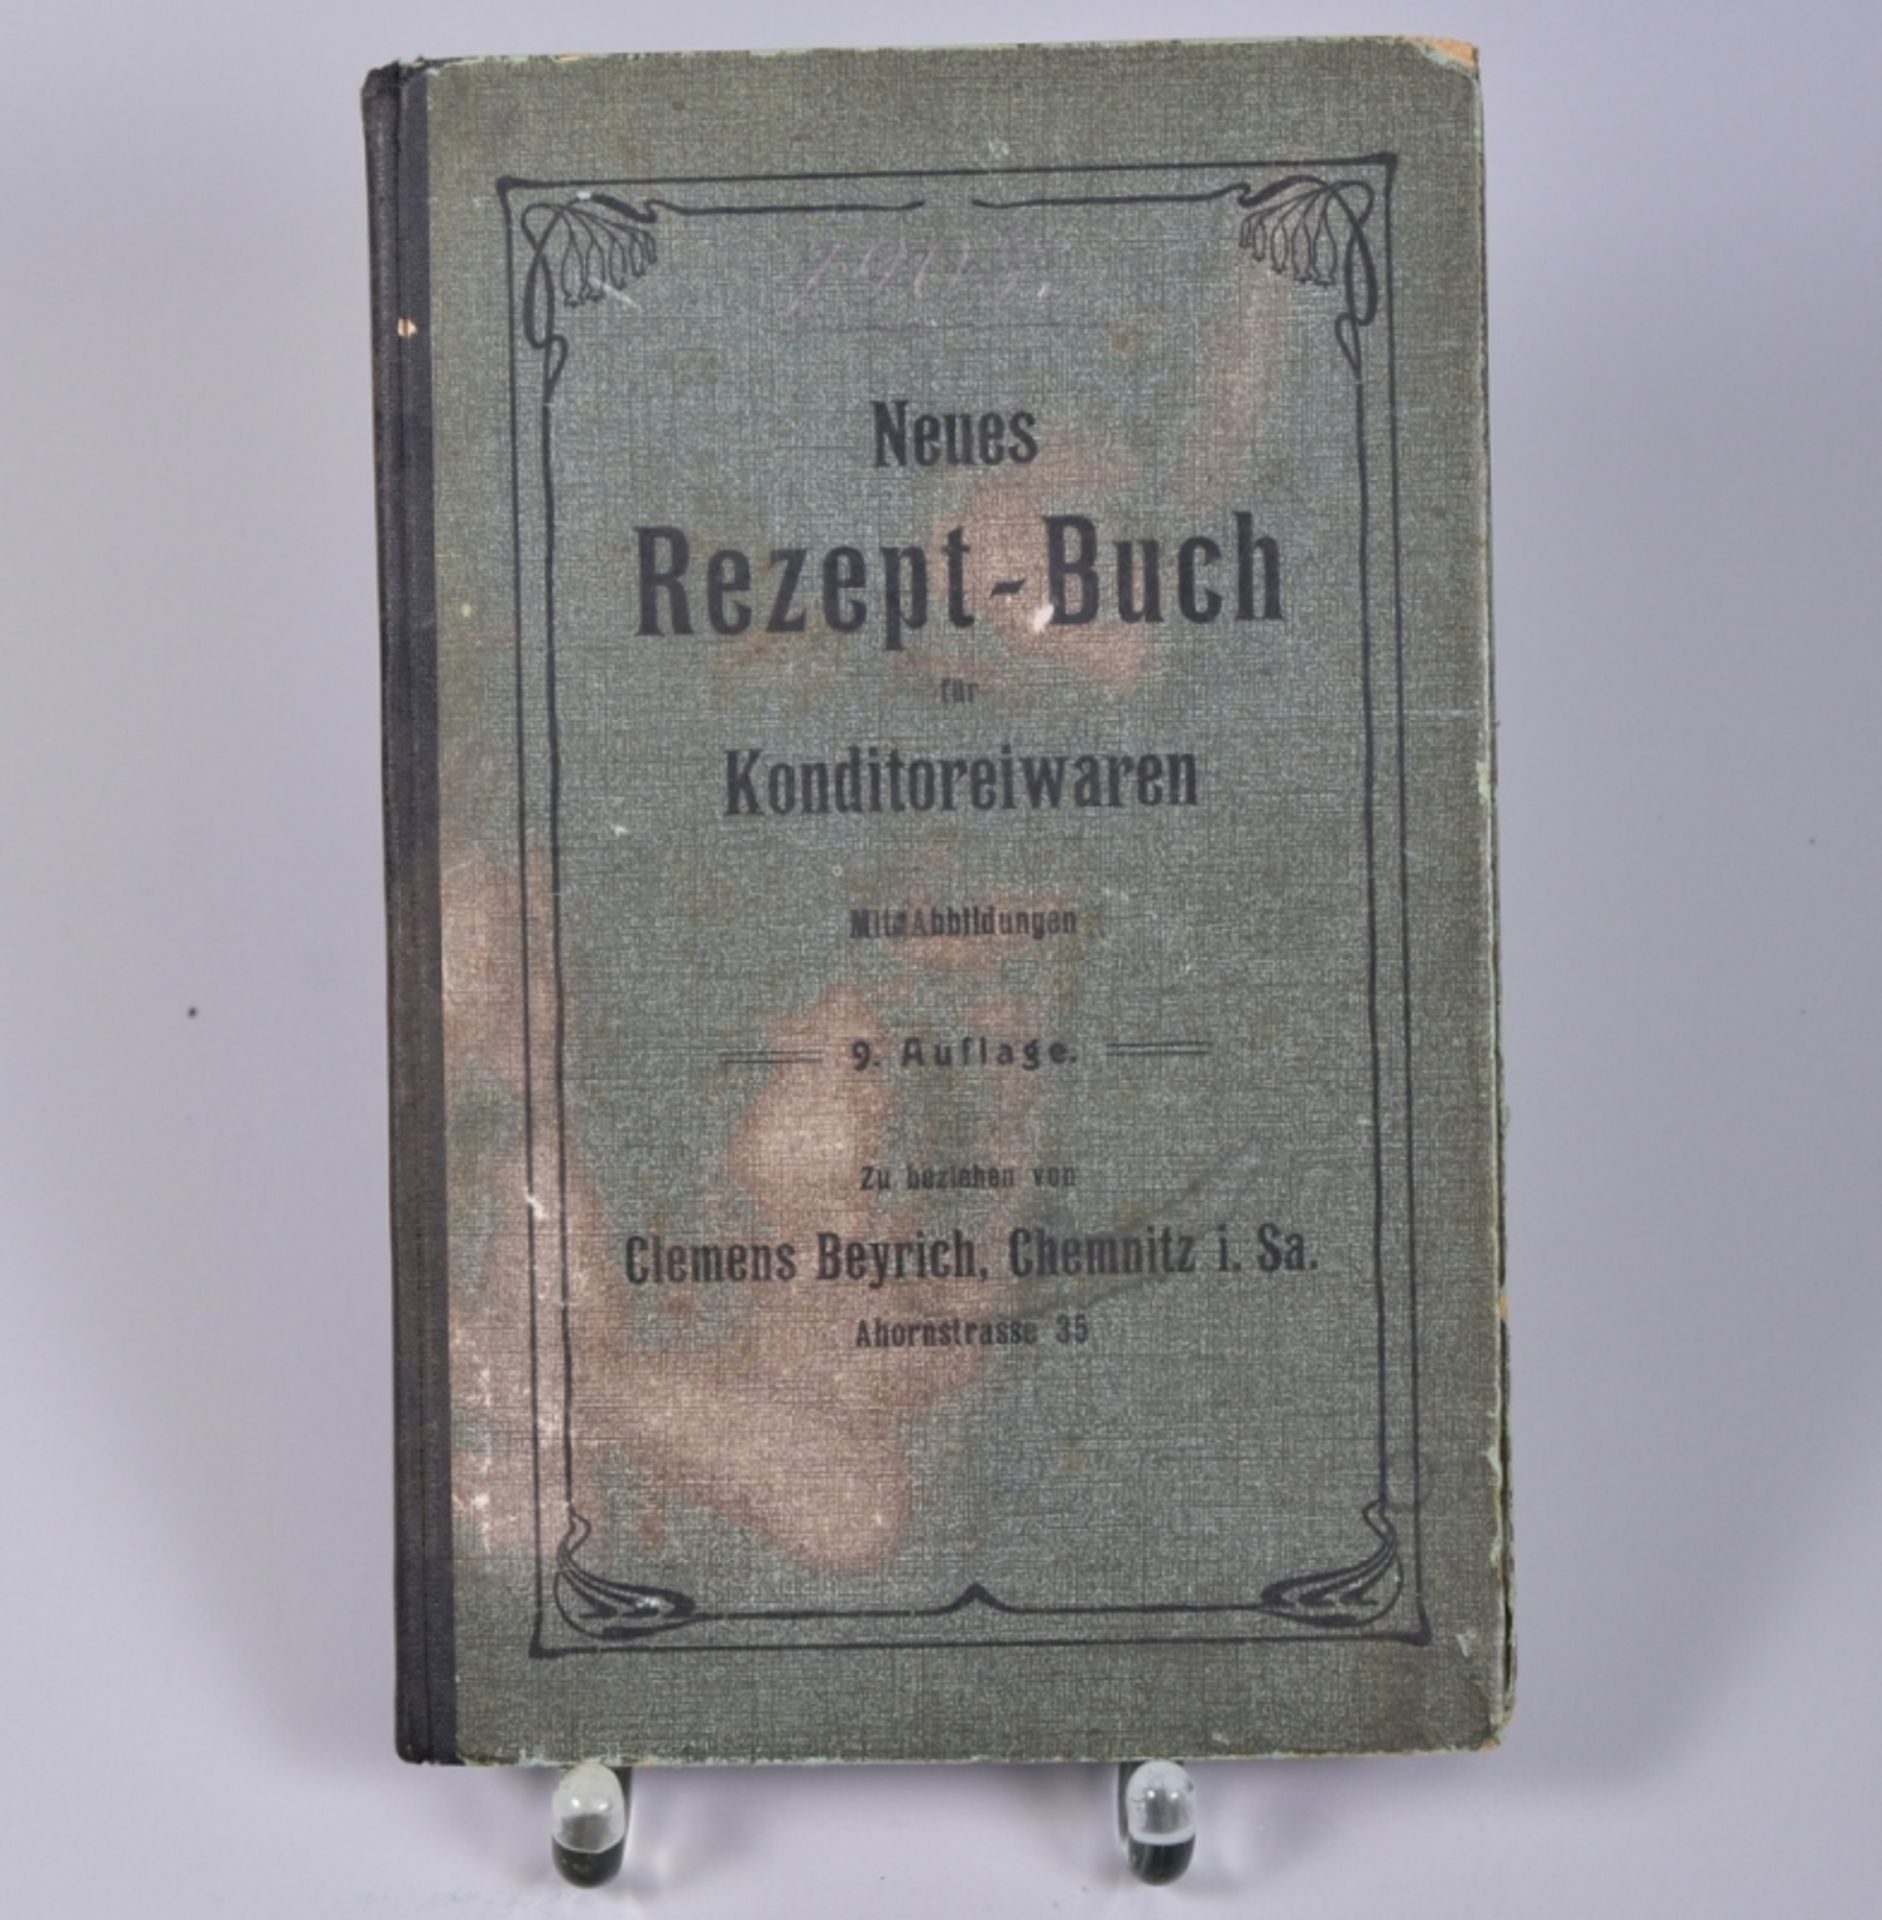 "Neues Rezeptbuch f. Konditoreiwaren" Clemens Beyrich Konditor Cemnitz,1908, prämiert und